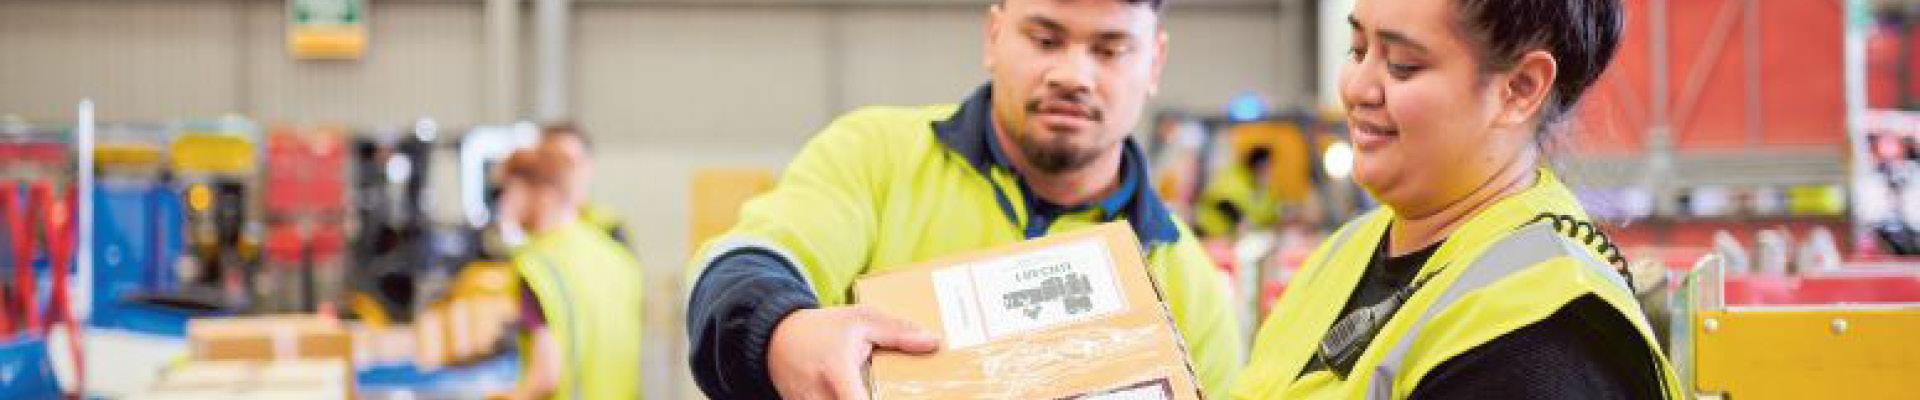 Man and women in hi-viz handling parcels